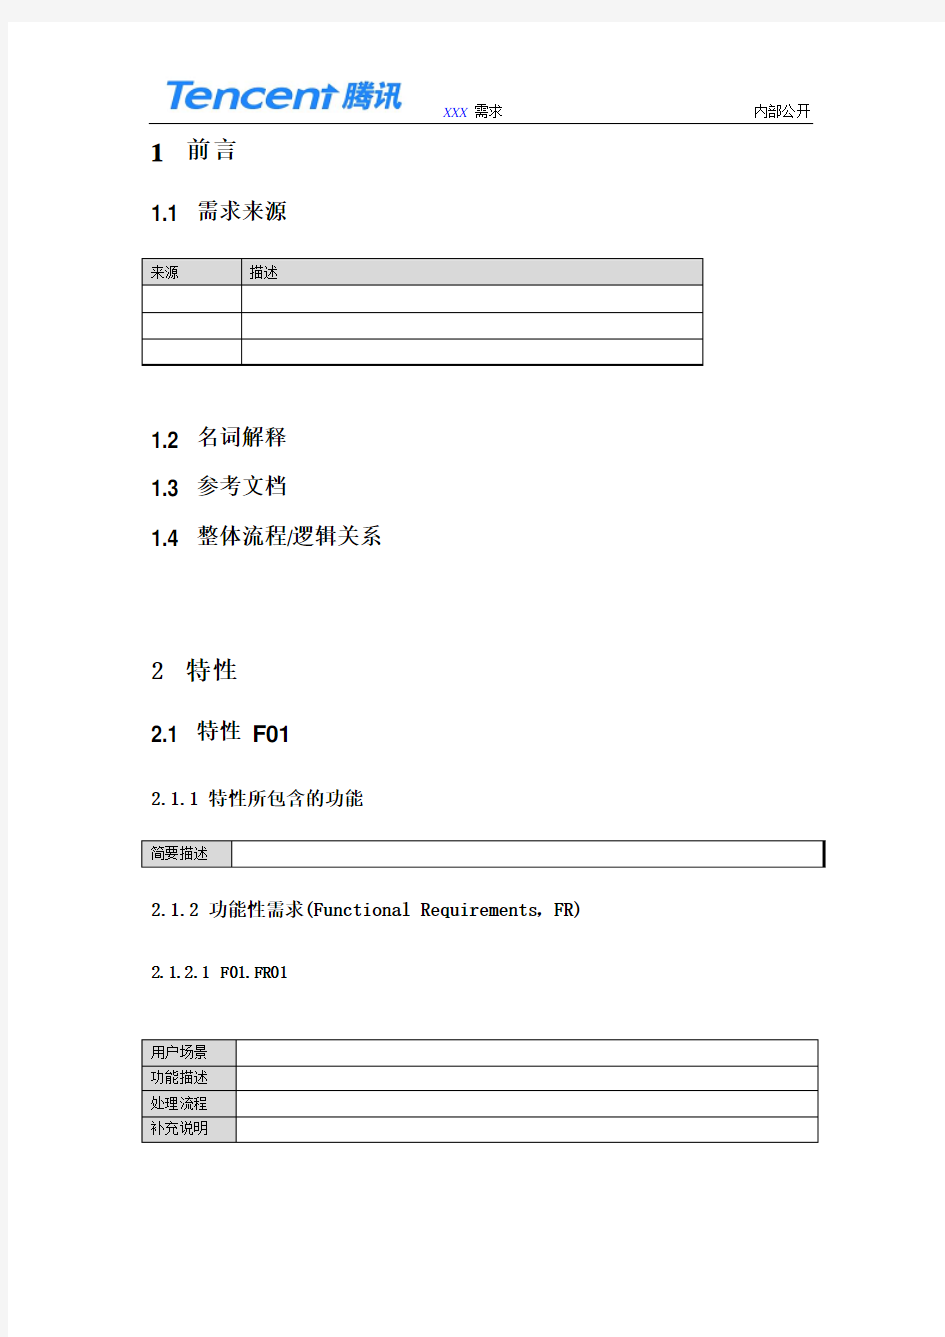 腾讯QQ浏览器需求文档详细模板